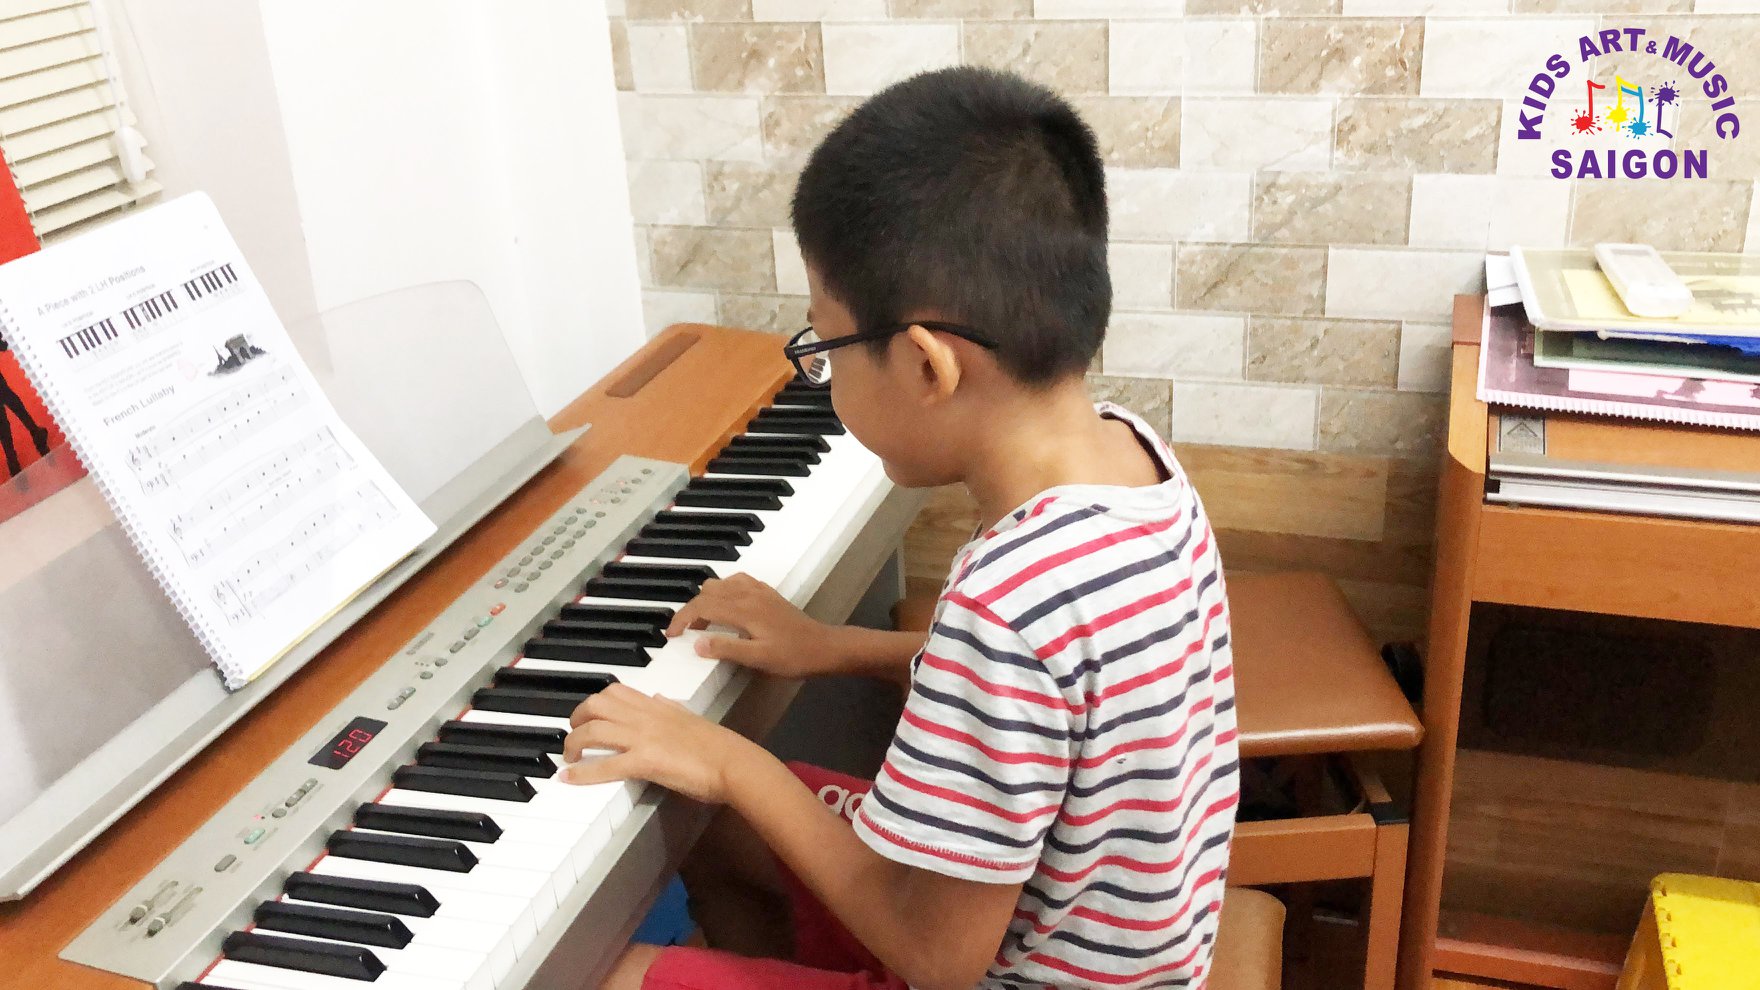 Khóa học đàn Piano quận 1 chất lượng và uy tín - hình ảnh 1